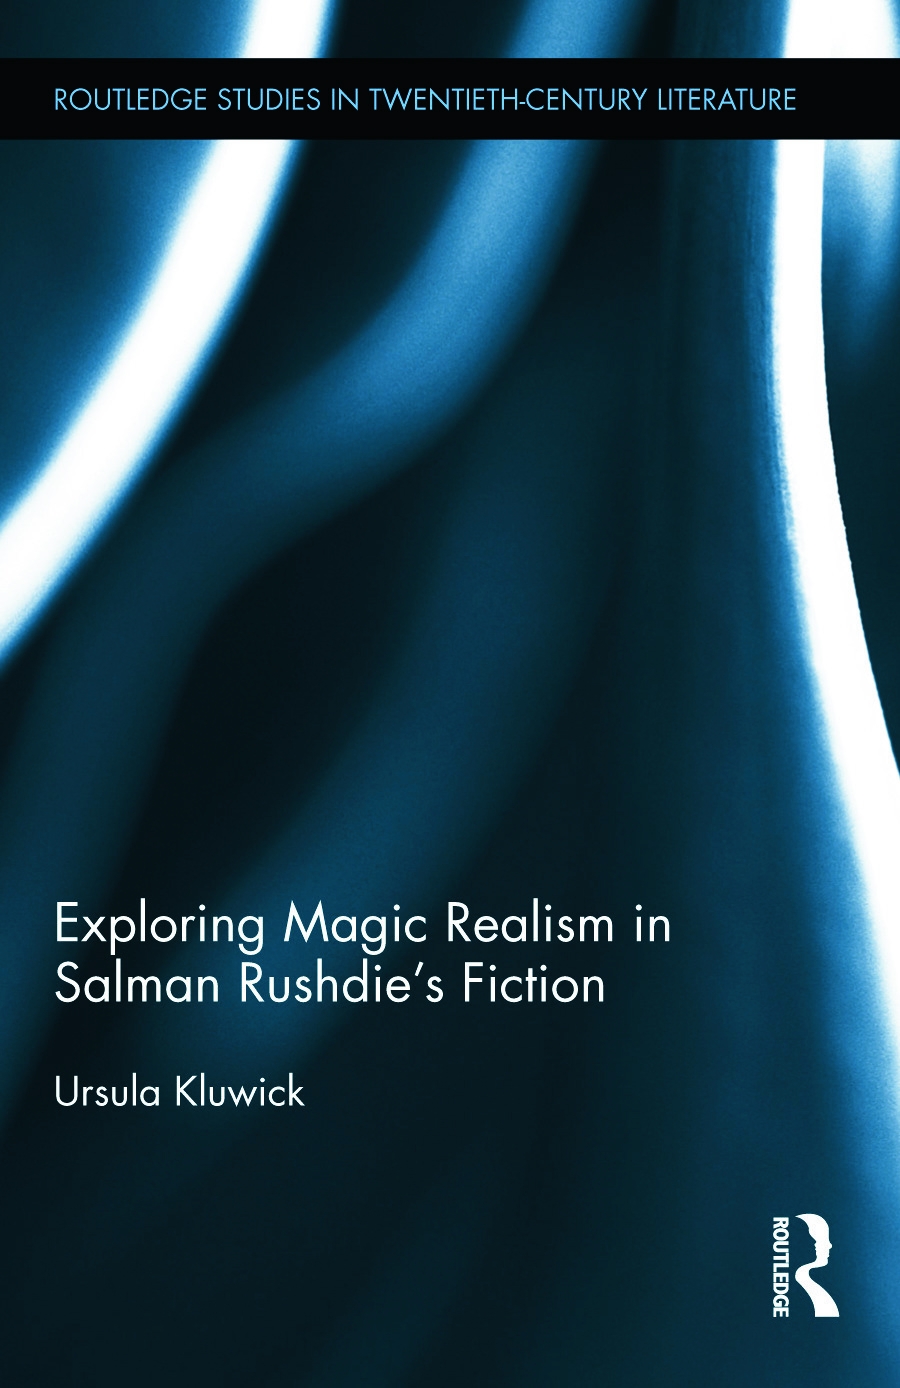 Exploring Magic Realism in Salman Rushdie’s Fiction